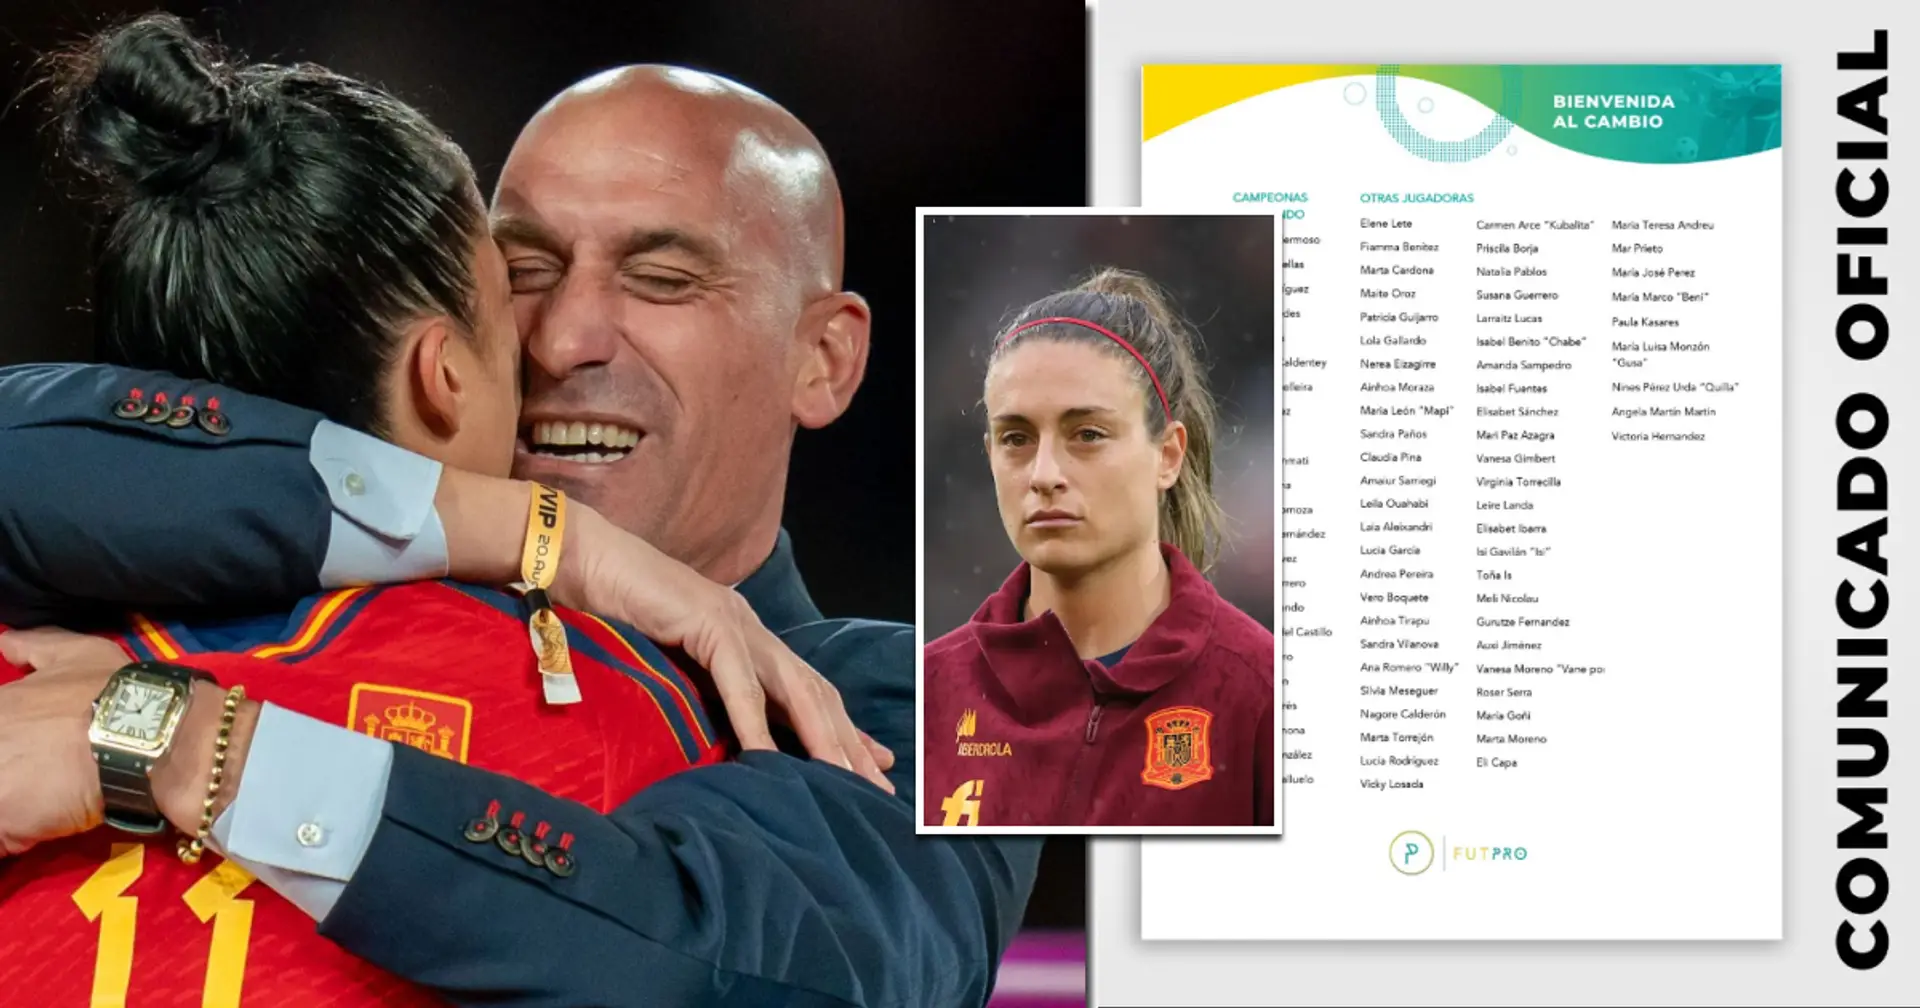 81 Fußballerinnen, darunter Alexia Putellas und Jenni Hermoso, weigern sich, für Spanien zu spielen, bis Luis Rubiales entlassen wird